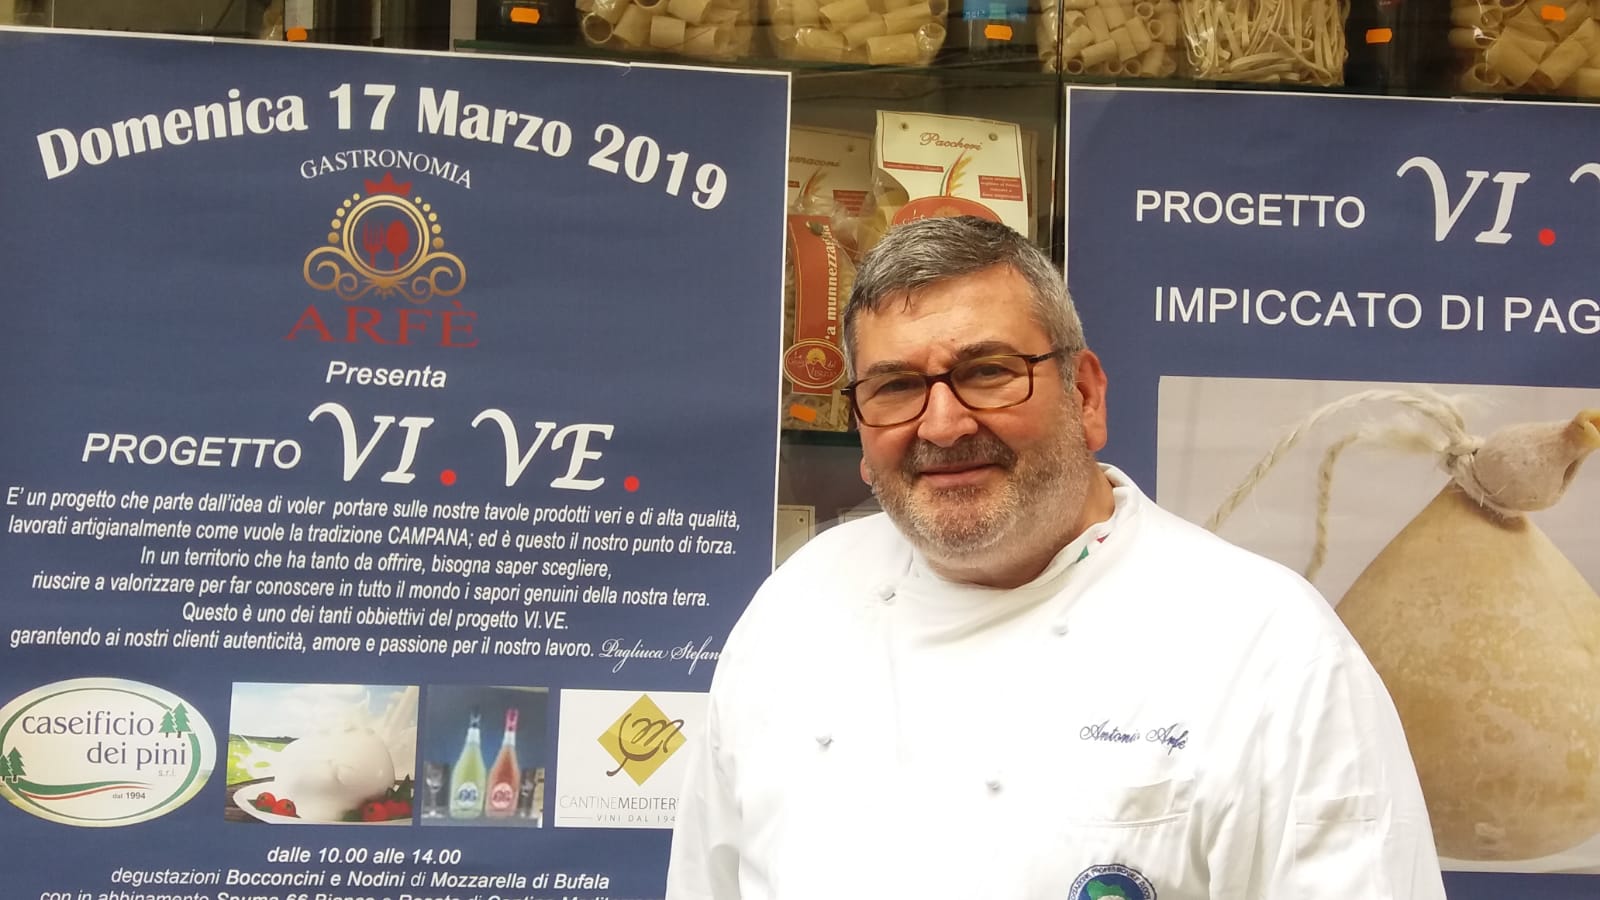 Presentato a Napoli presso la gastronomia Arfè il progetto Vi.Ve